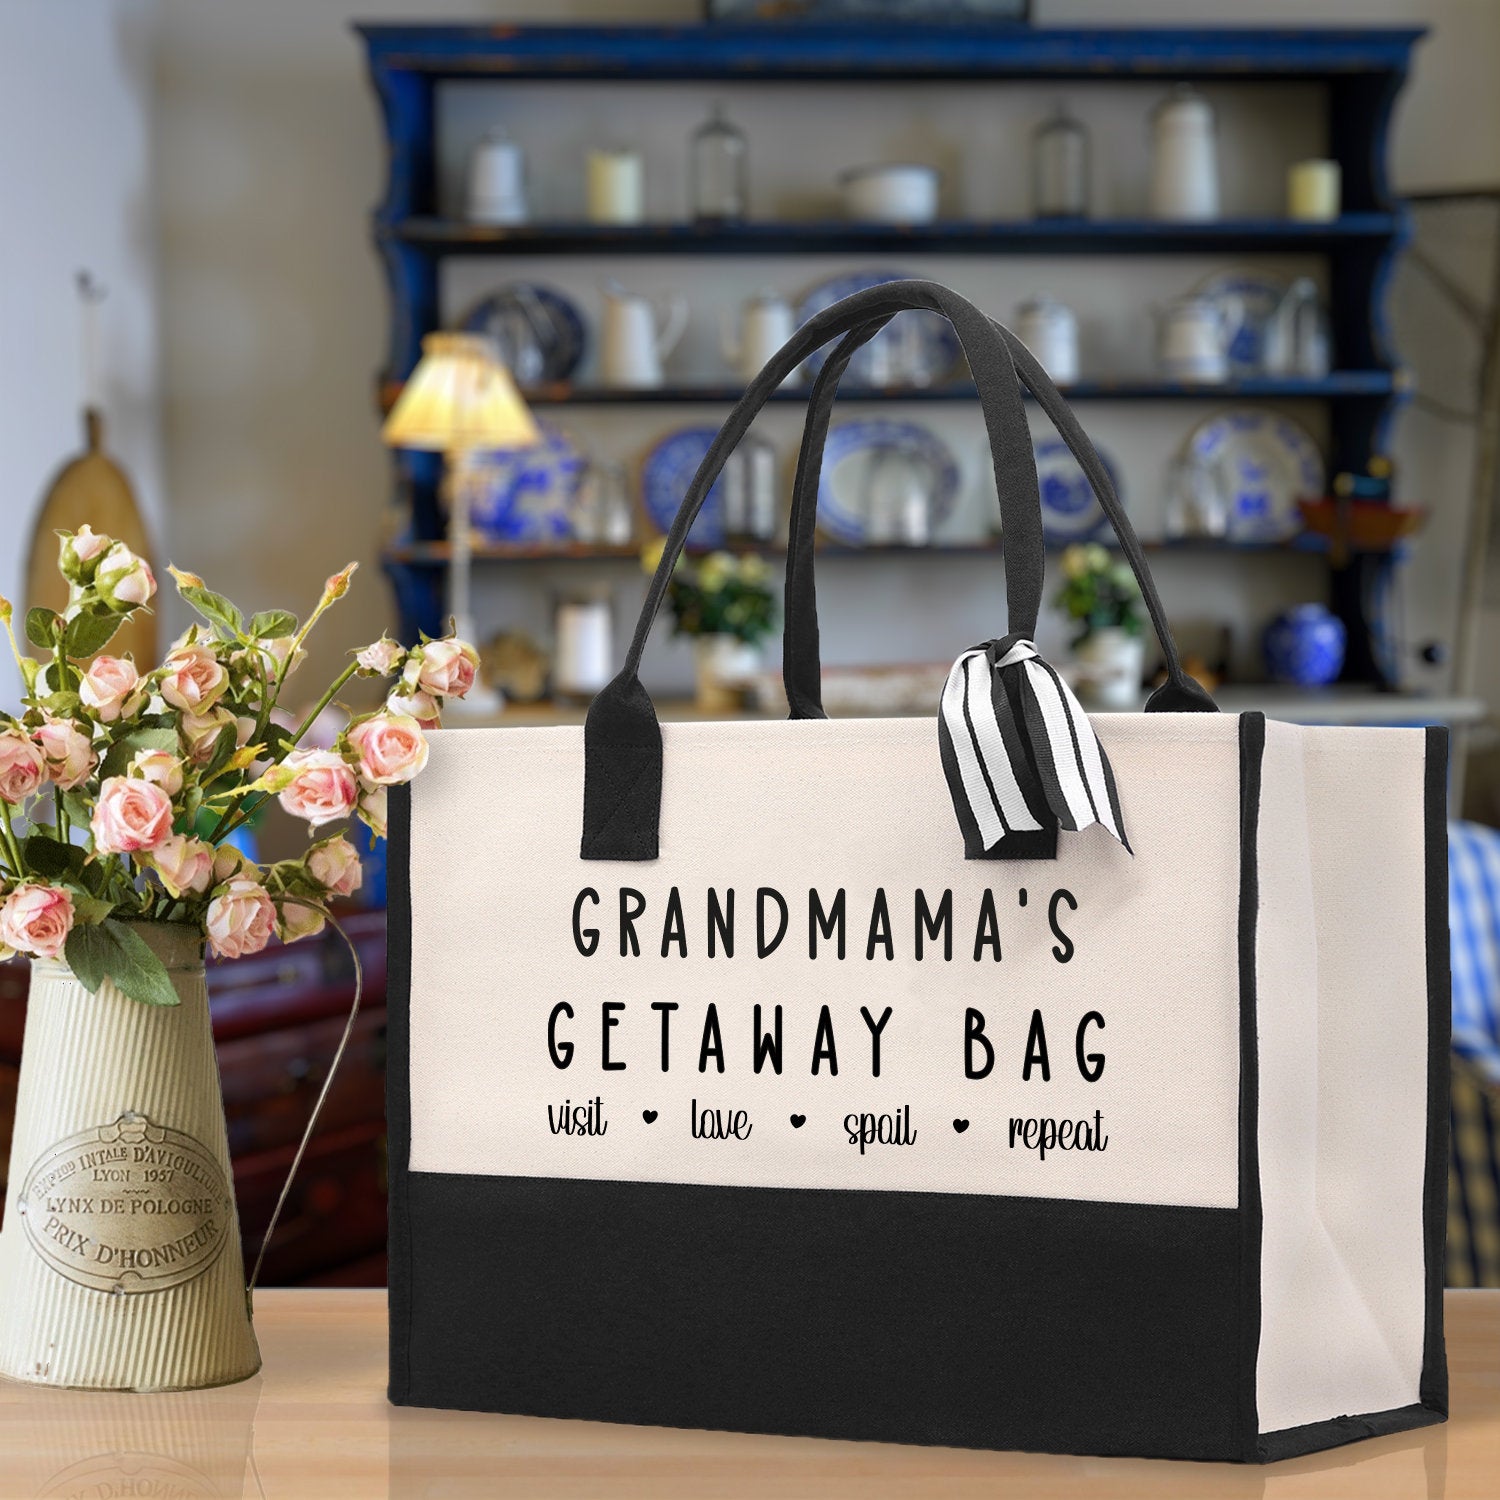 Grandmama's Getaway Bag Tote Bag Grandma's Getaway Bag Grandma Nana Bag Grandma Gift Bag Shopping Bag Mothers Day Gift Live Love Spoil Bag